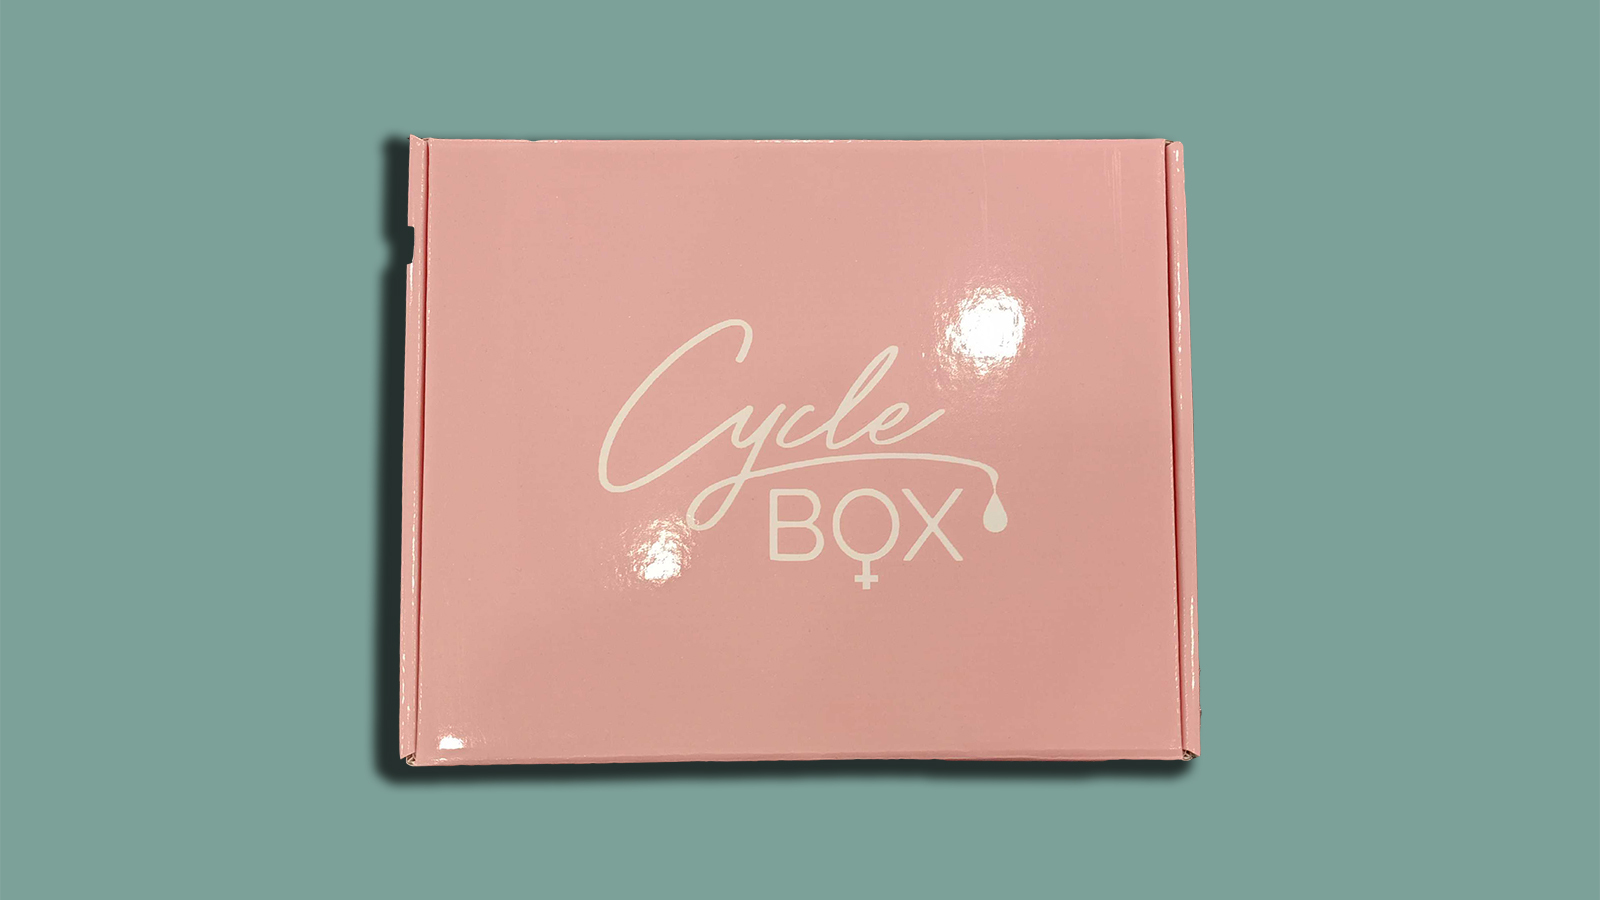 Cycles Box.jpg Image